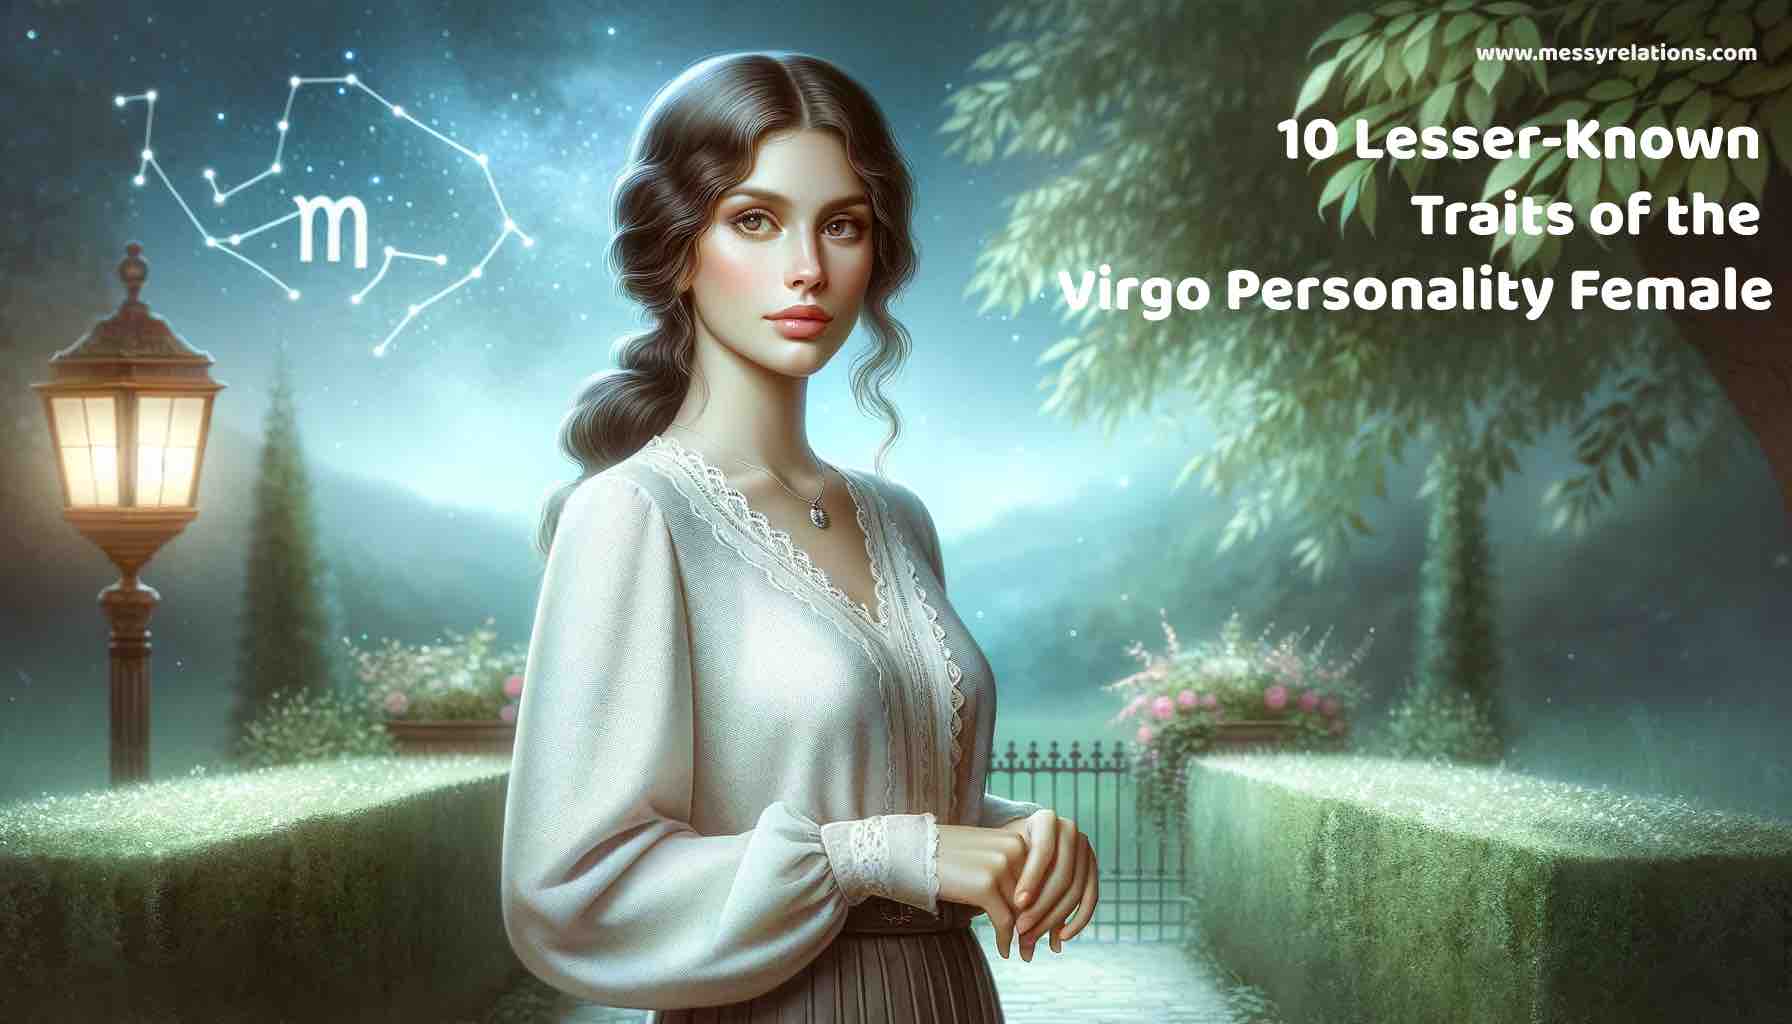 Virgo Personality Female